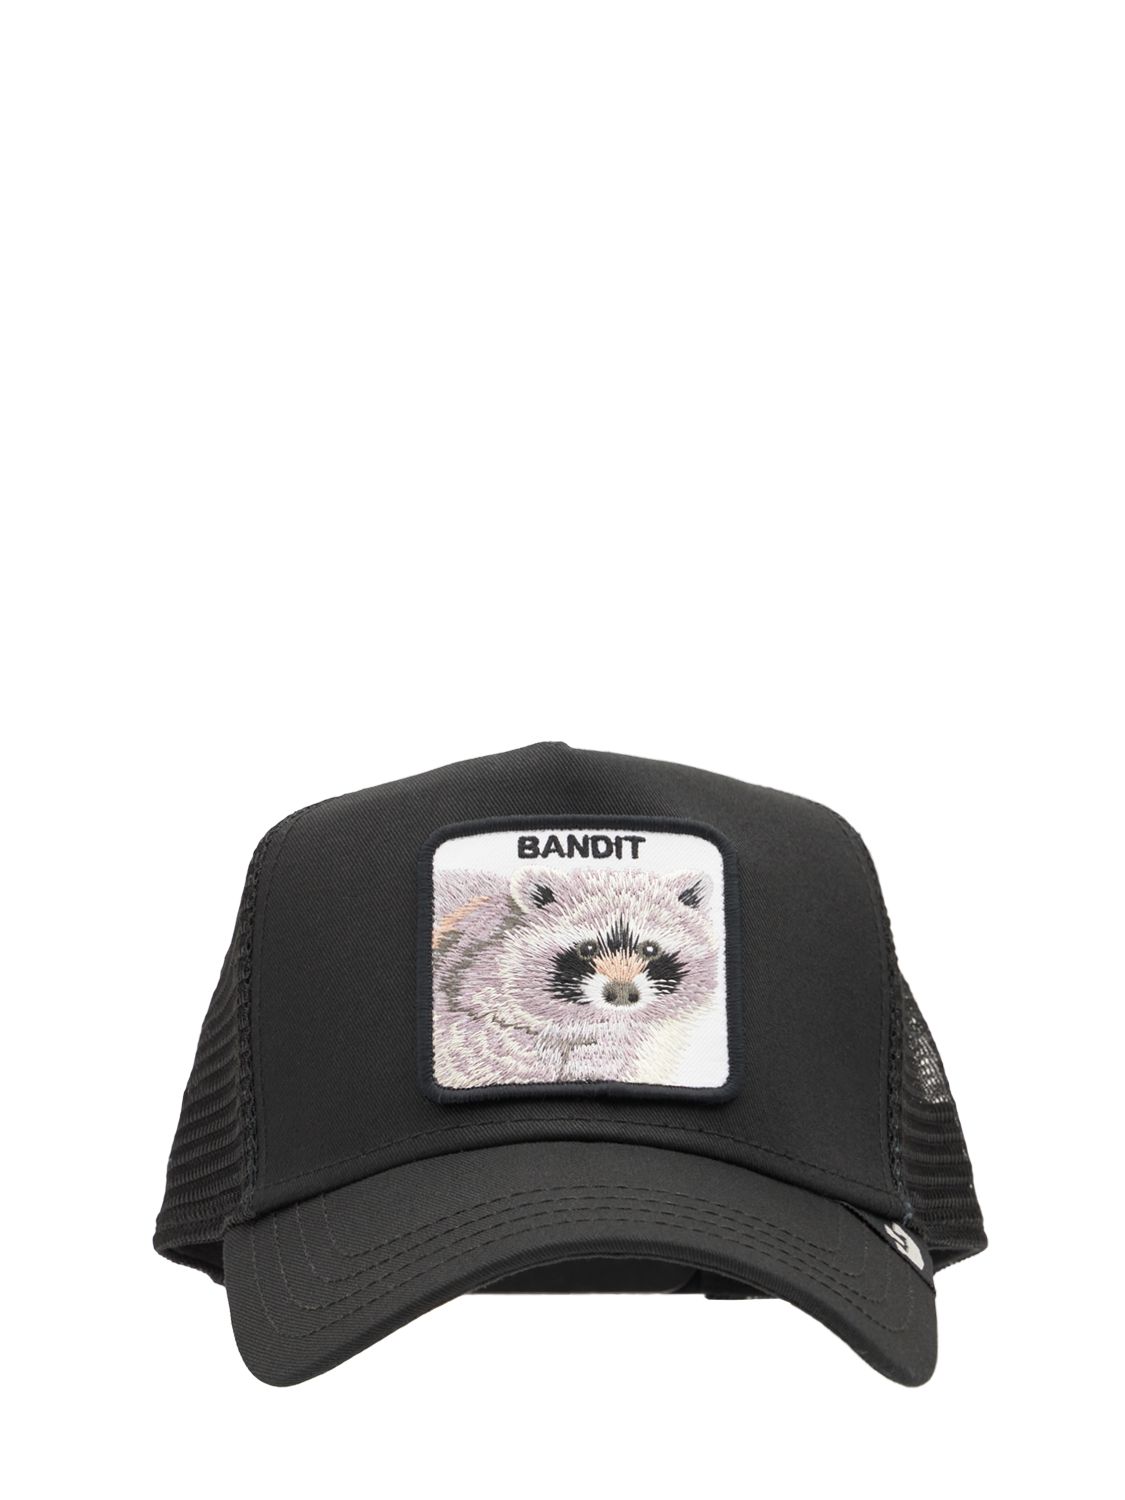 Bandit Trucker Hat